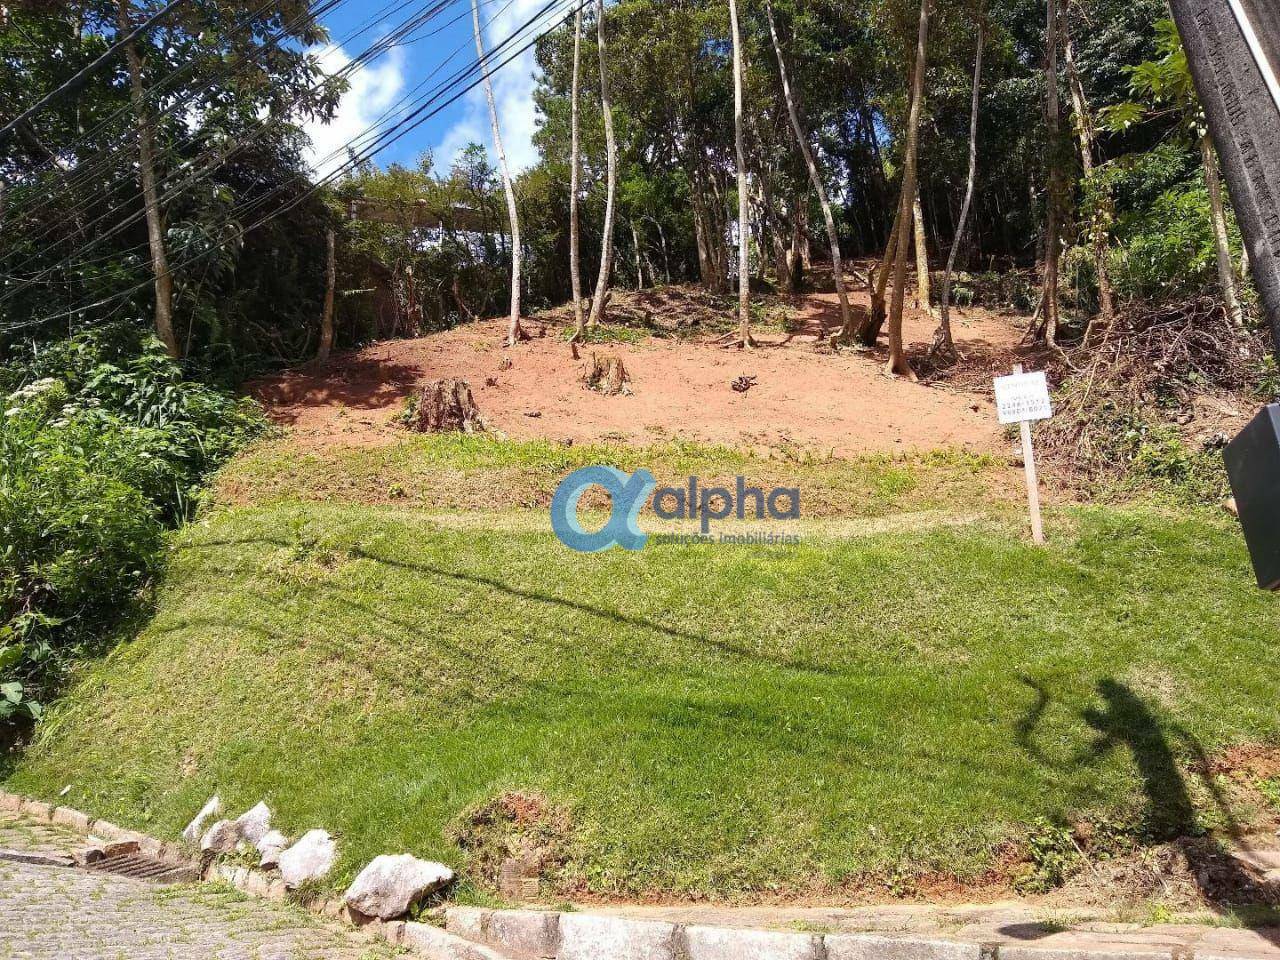 Terreno Residencial à venda em Bingen, Petrópolis - RJ - Foto 1